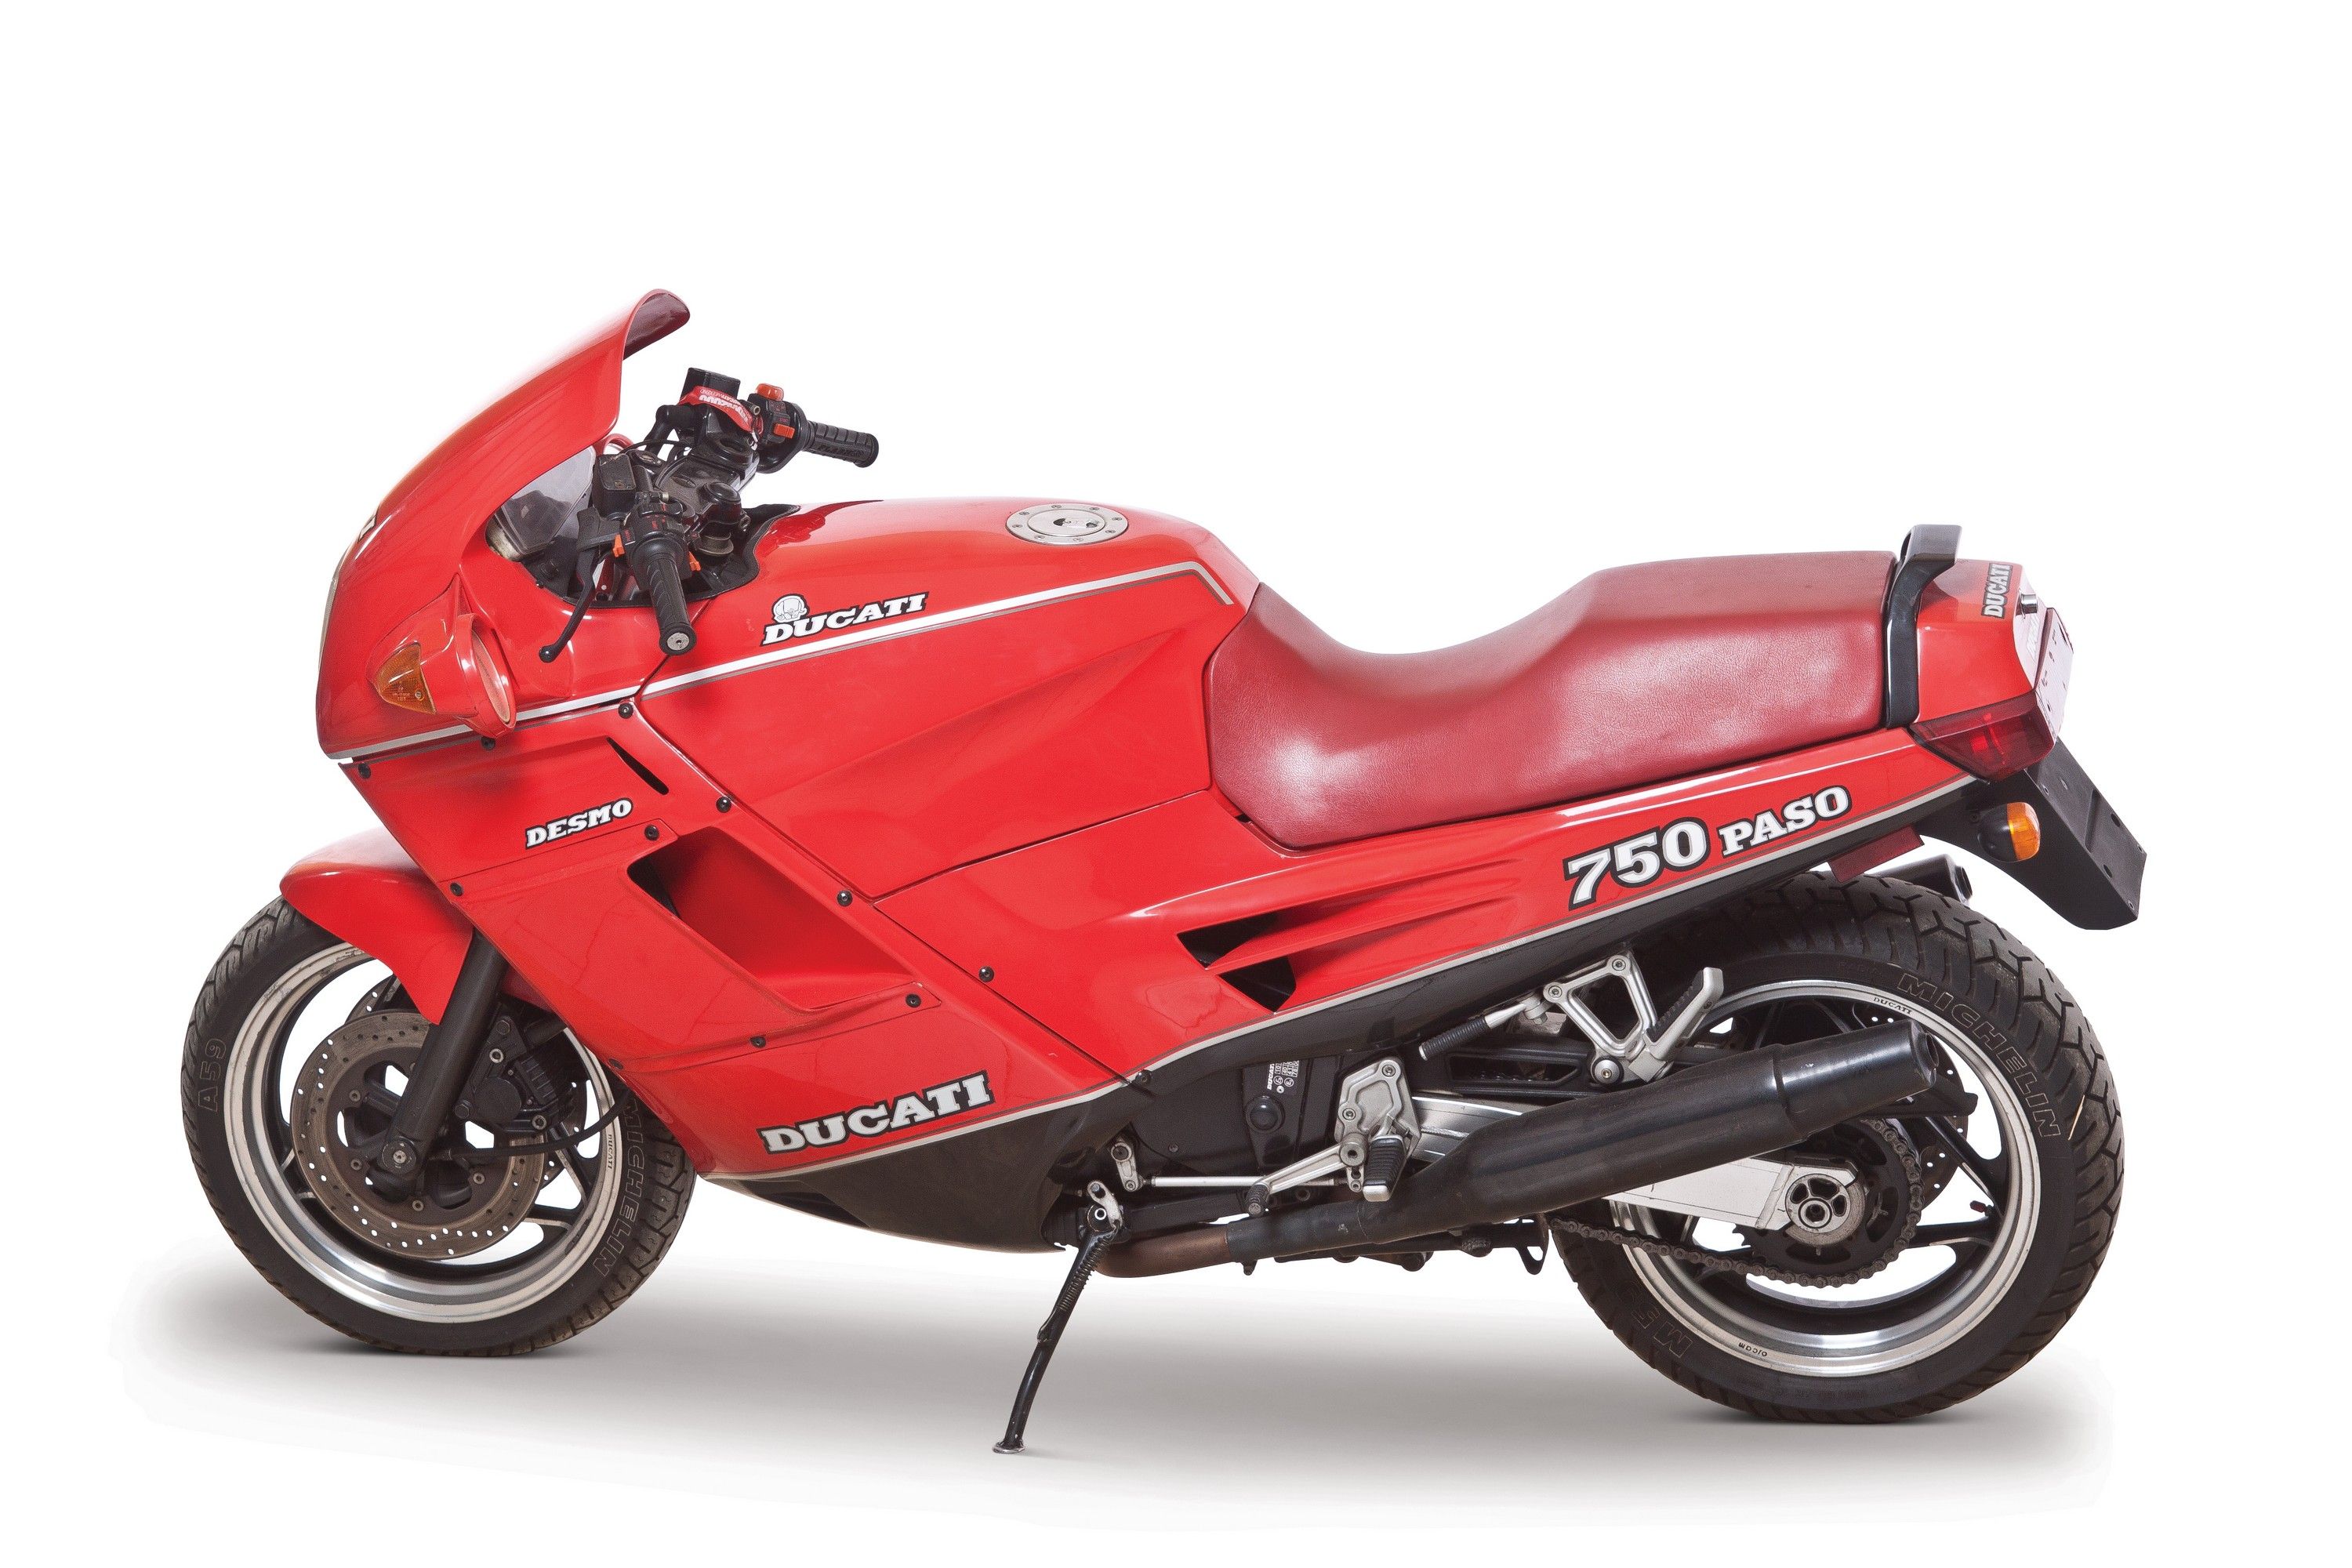 1990 Ducati 750 Paso Desmo